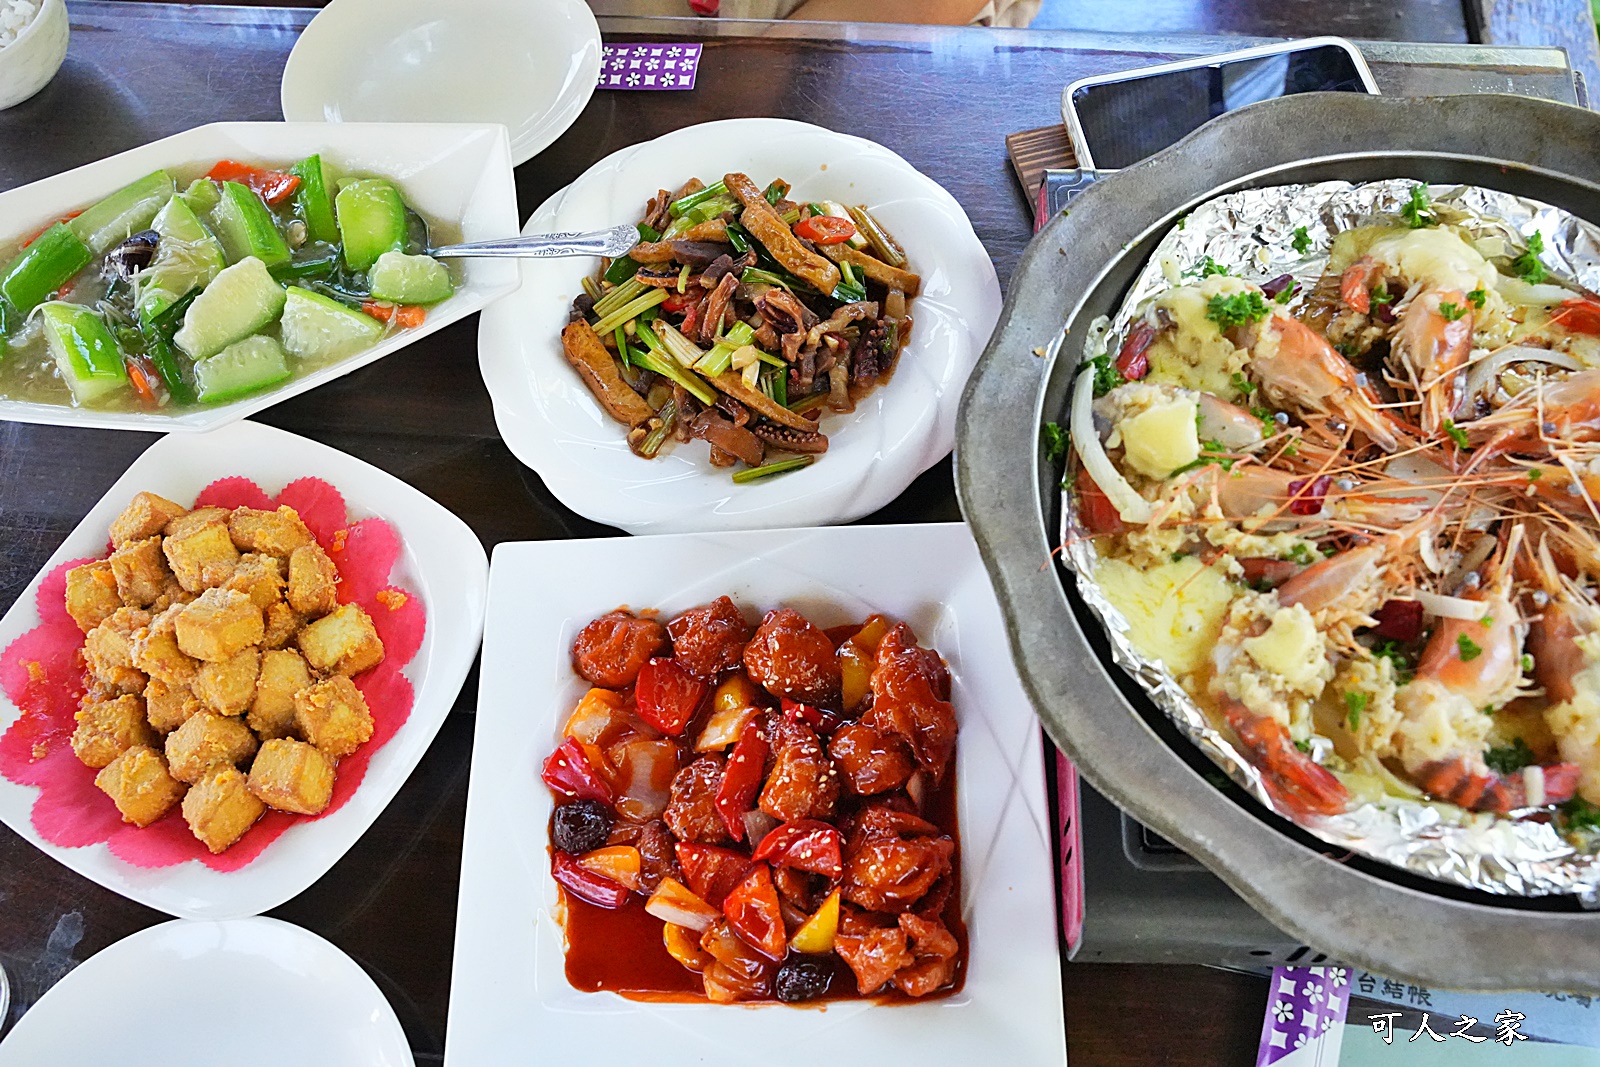 屏東人氣餐廳,屏東美食,景觀餐廳,水漾活蝦景觀餐廳,水漾活蝦菜單,泰國蝦料理